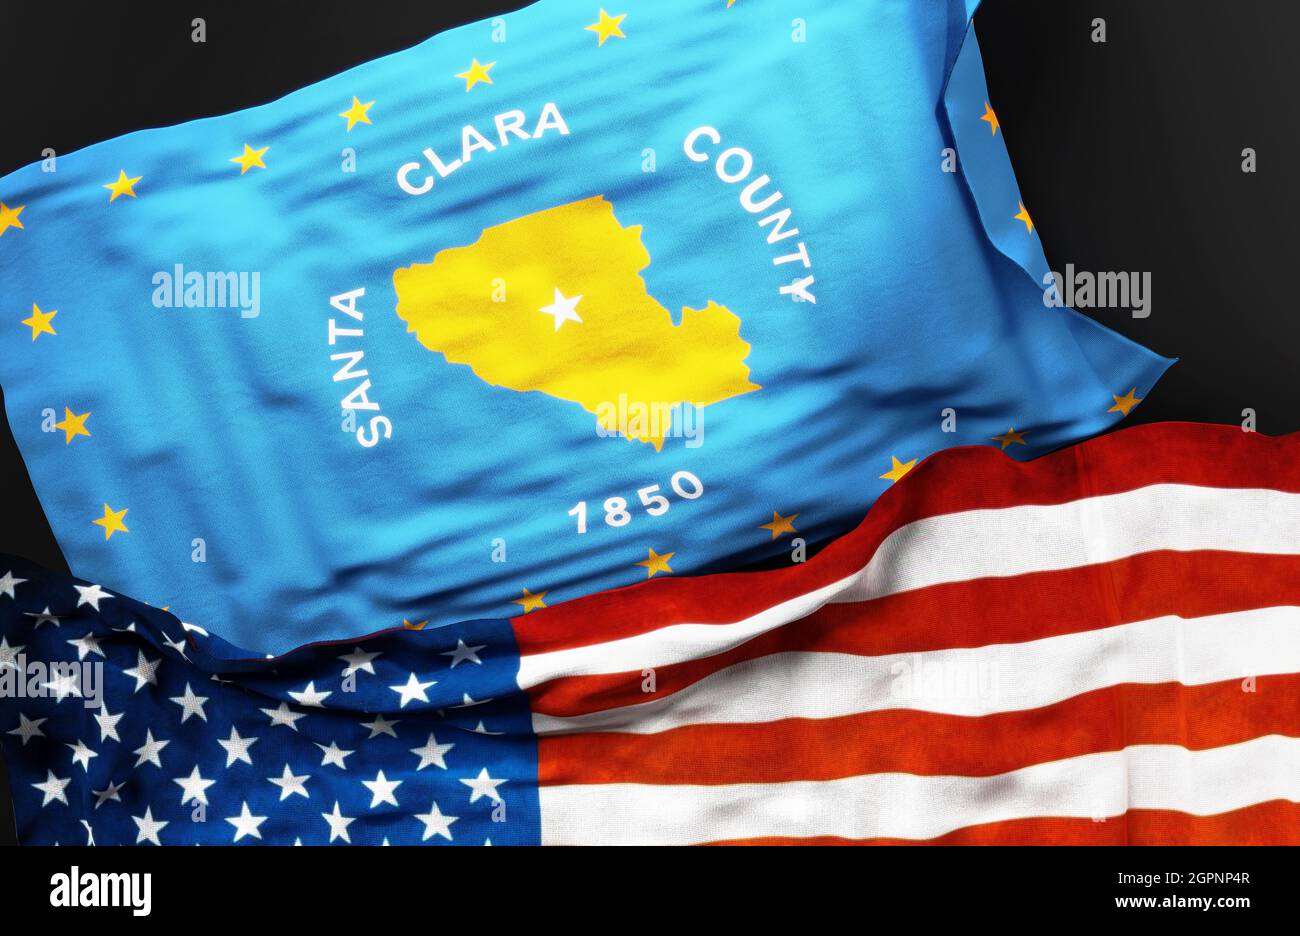 Flagge von Santa Clara County California zusammen mit einer Flagge der Vereinigten Staaten von Amerika als Symbol der Einheit zwischen ihnen, 3d-Illustration Stockfoto